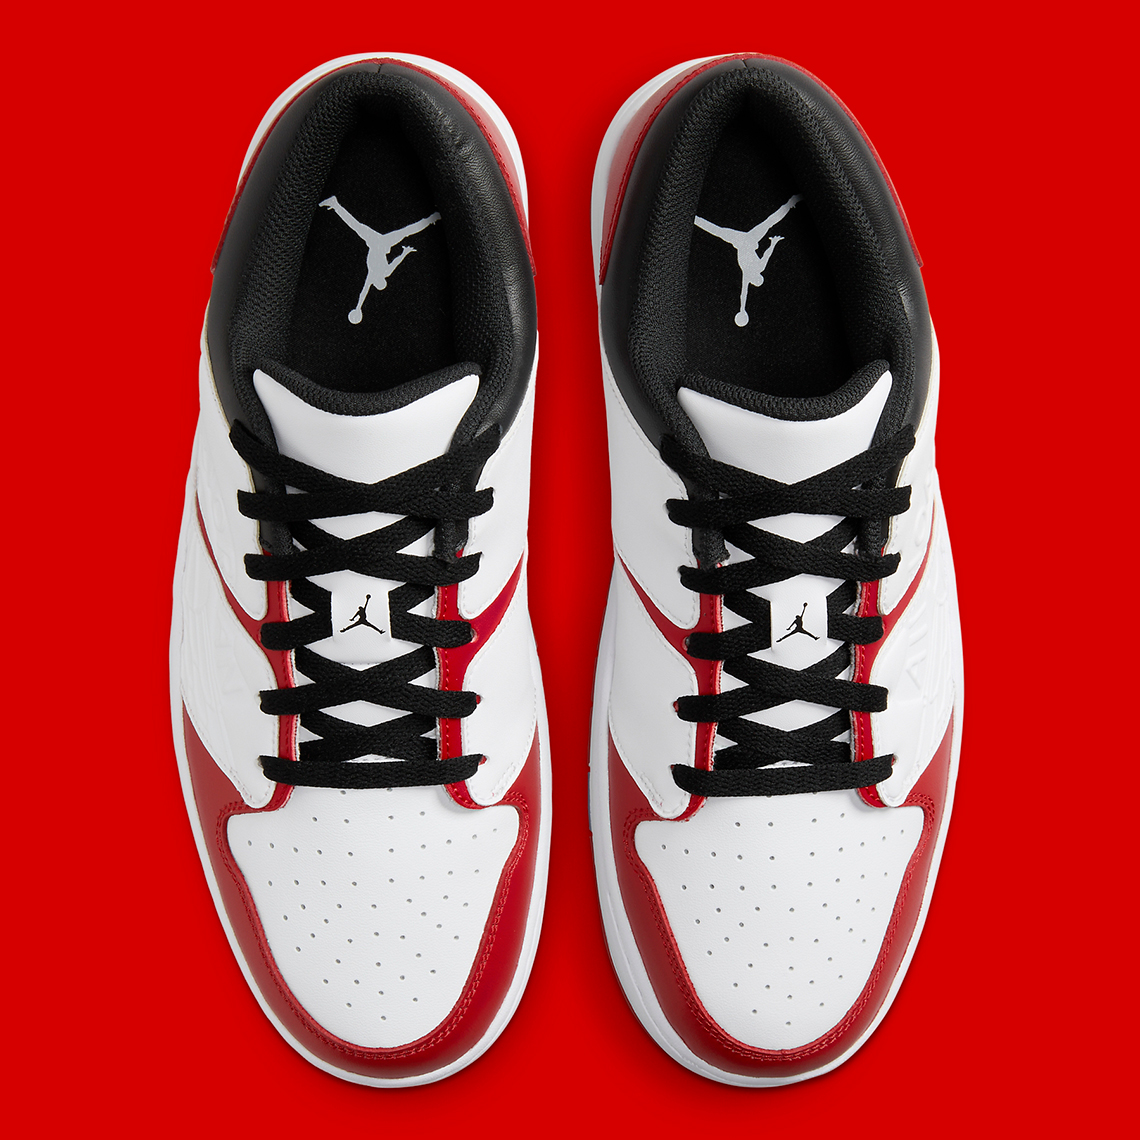 Nike Air Jordan 15 OG 'Obsidian' 2000 Obsidian White Metallic Silver 136029-411 Chicago Alternate Dv5141 611 1